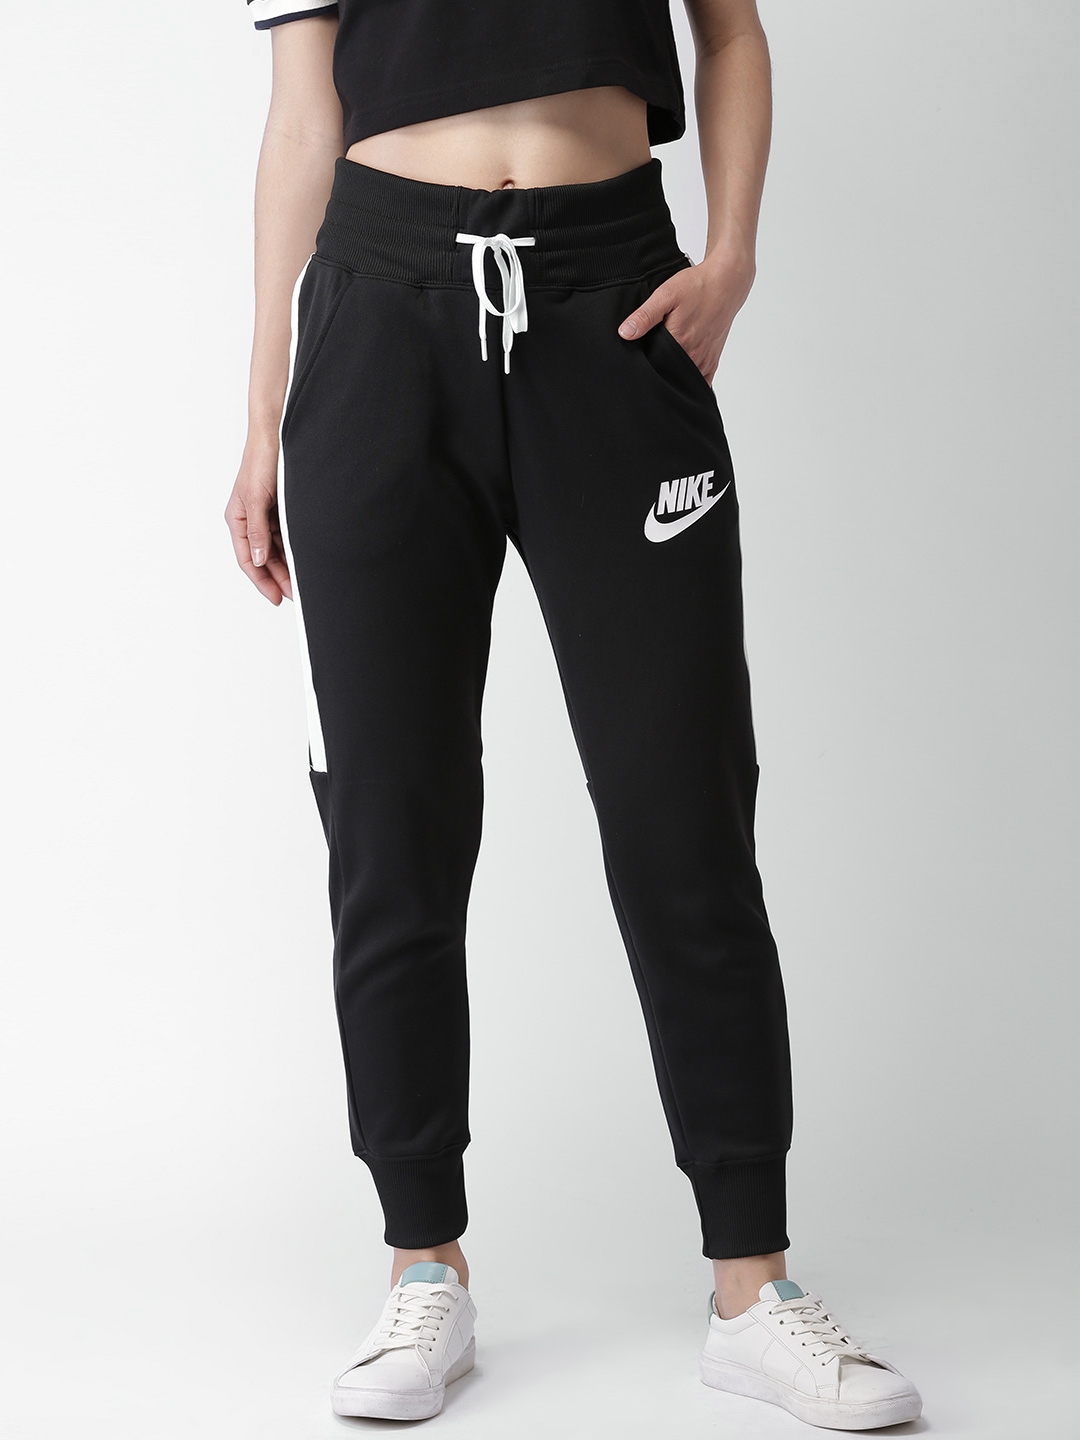 Buy Nike Black Sports Wear PK HW Joggers - Track Pants for Women ...